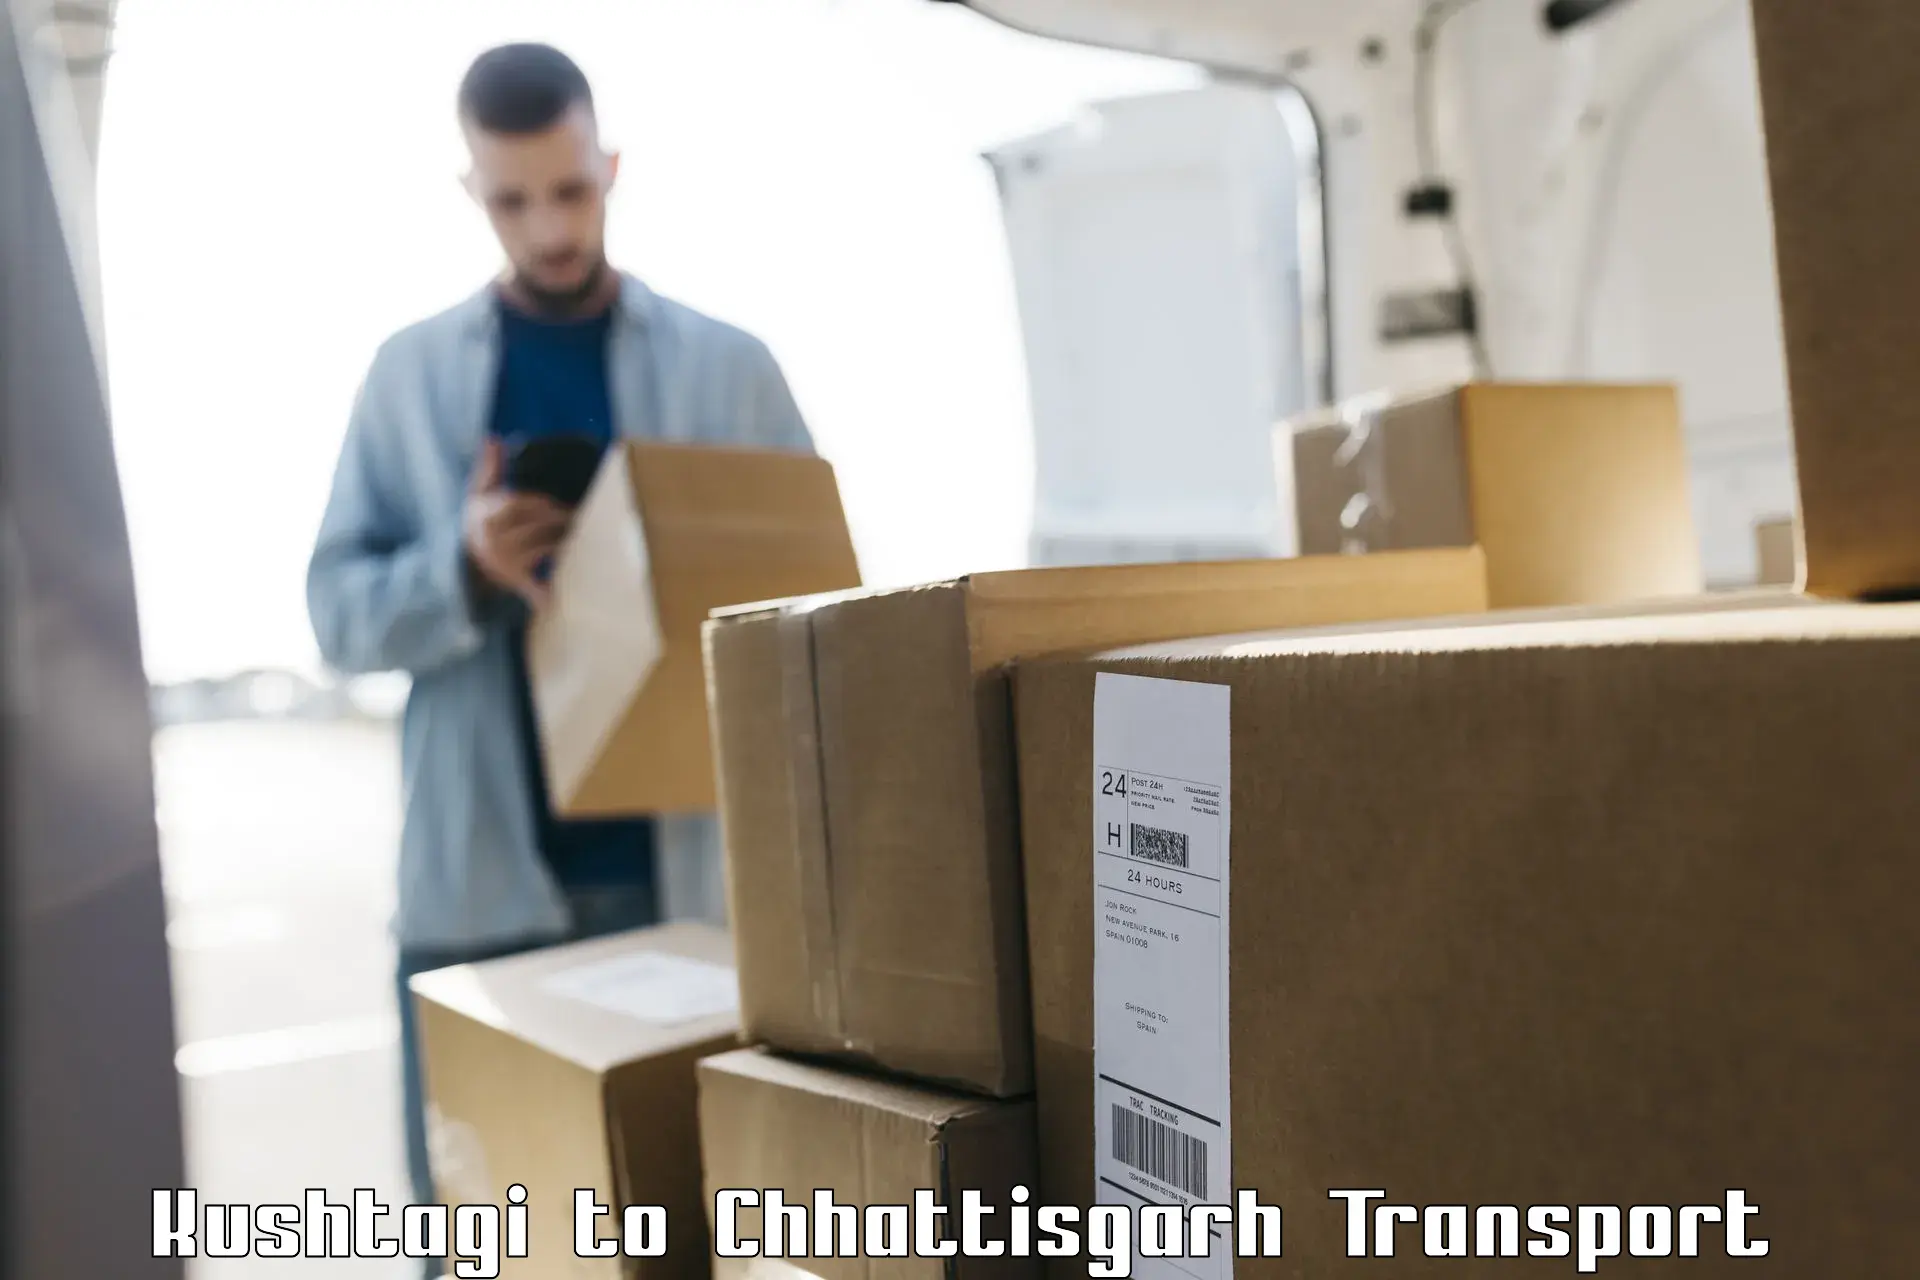 Cargo transportation services Kushtagi to Patna Chhattisgarh